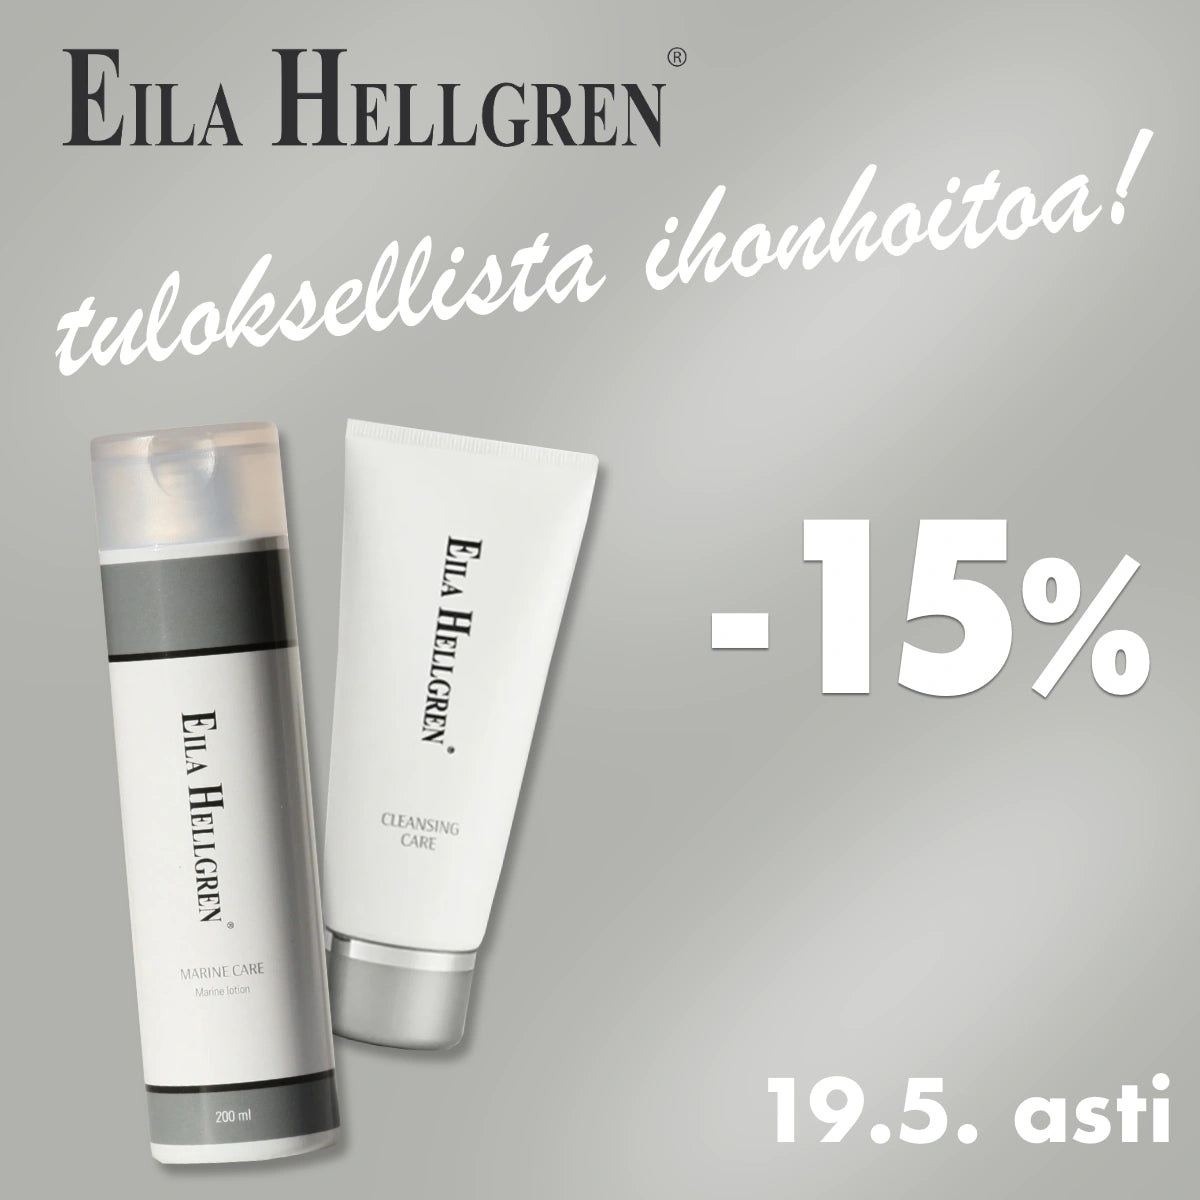 Eila Hellgren -15% 19.5. asti